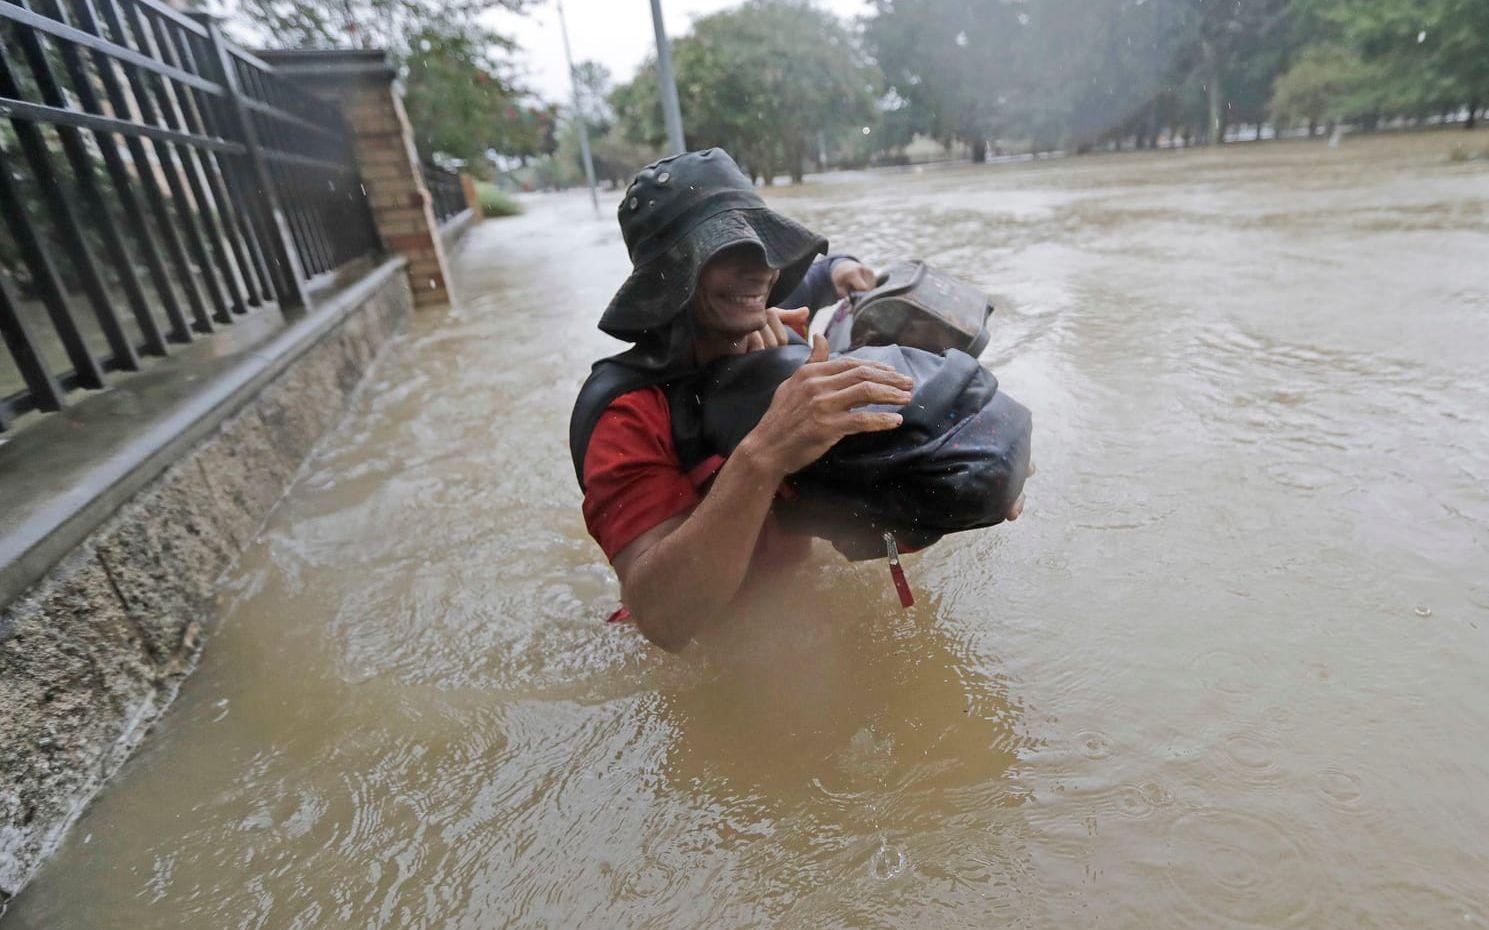 Boende i Houston vadar genom vattnet efter den tropiska stormens framfart. Bild: David j. Phillip/TT